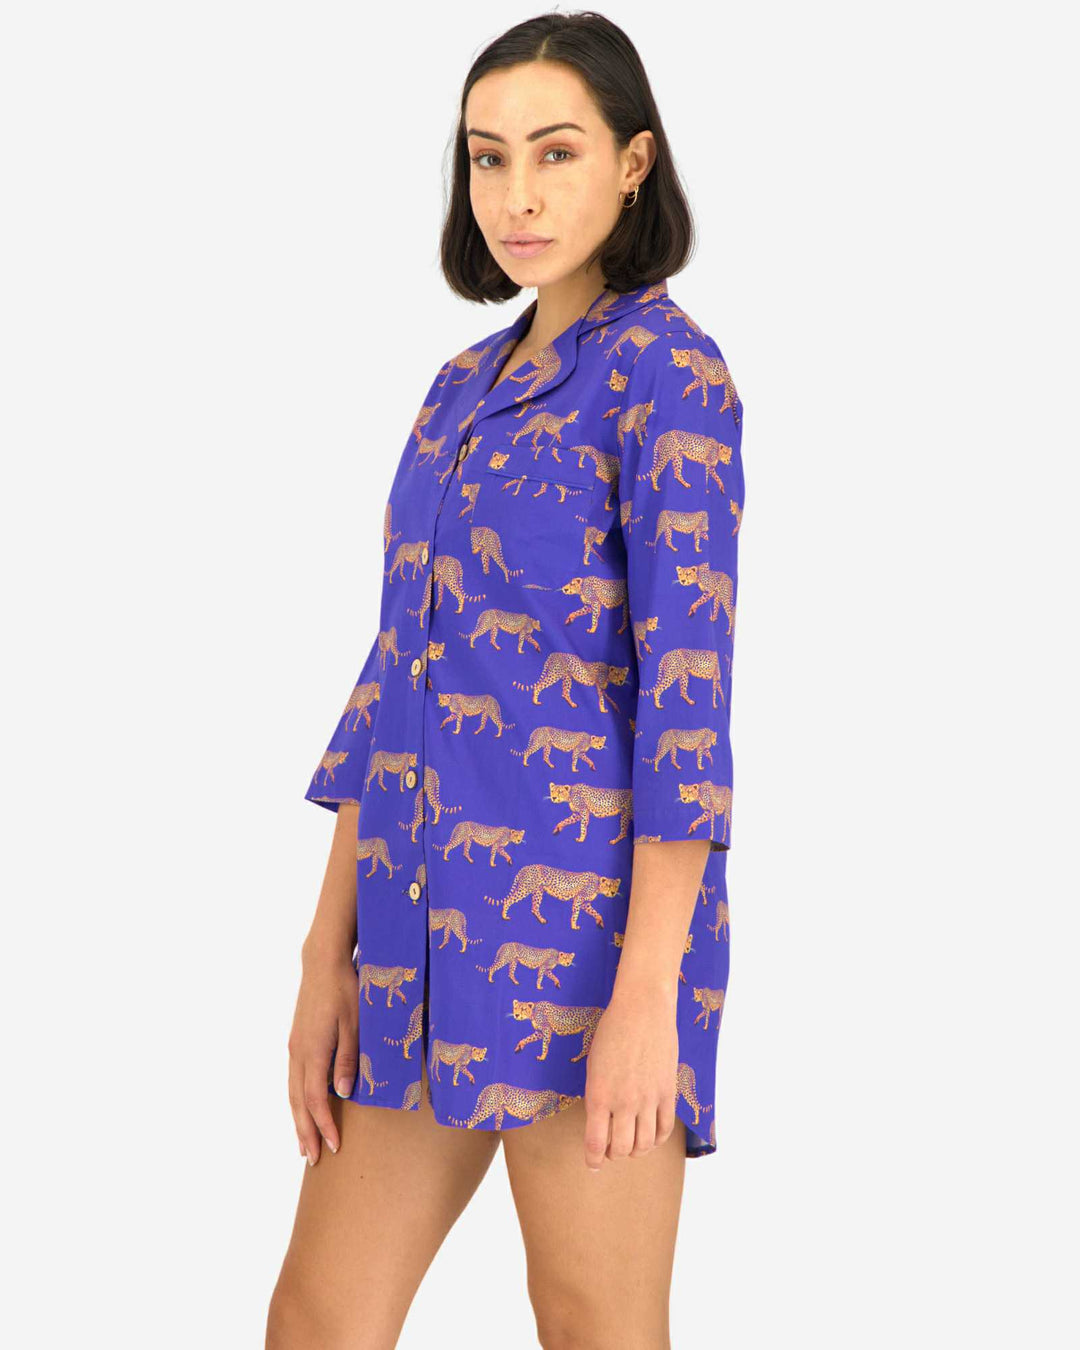 Womens sleepshirt - blue cheetah pattern